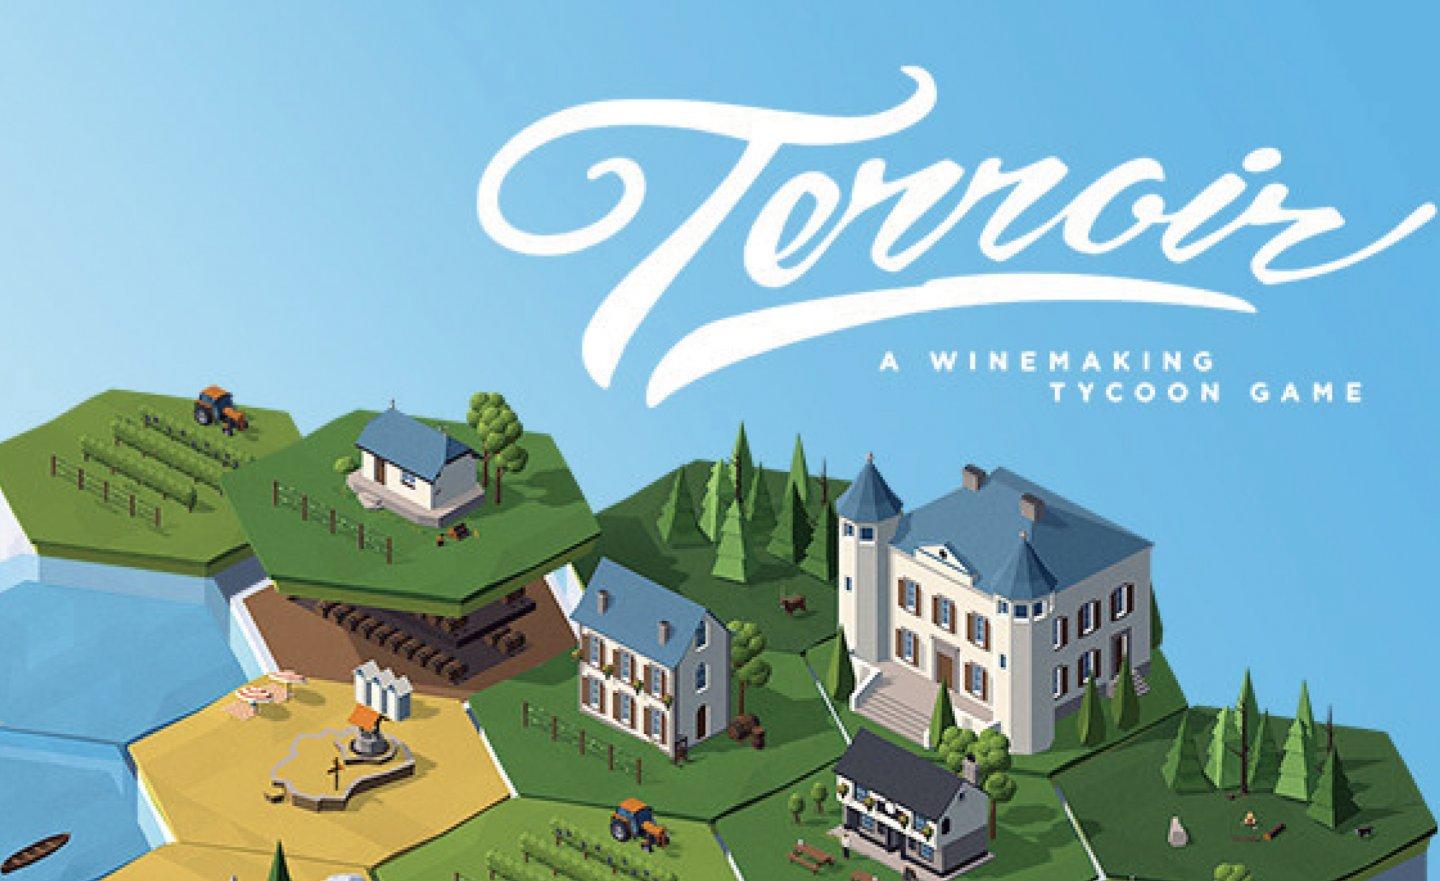 【限時免費】葡萄酒莊經營遊戲《Terroir》放送中，2022 年 11 月 28 日 22:00 截止